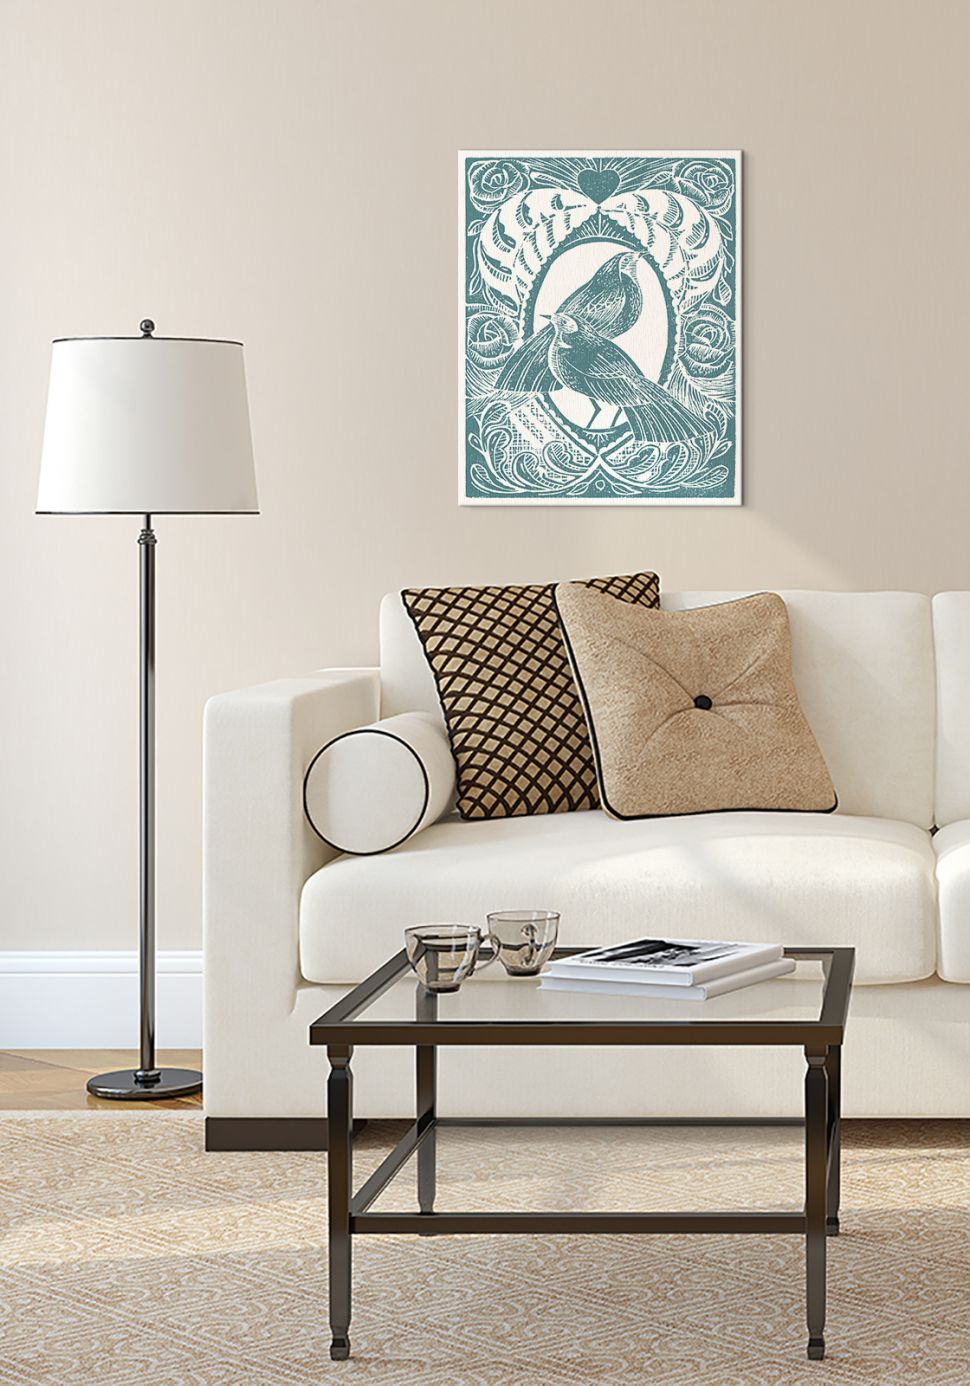 Obraz wiszący w salonie nad białą kanapą przedstawiający ptaki